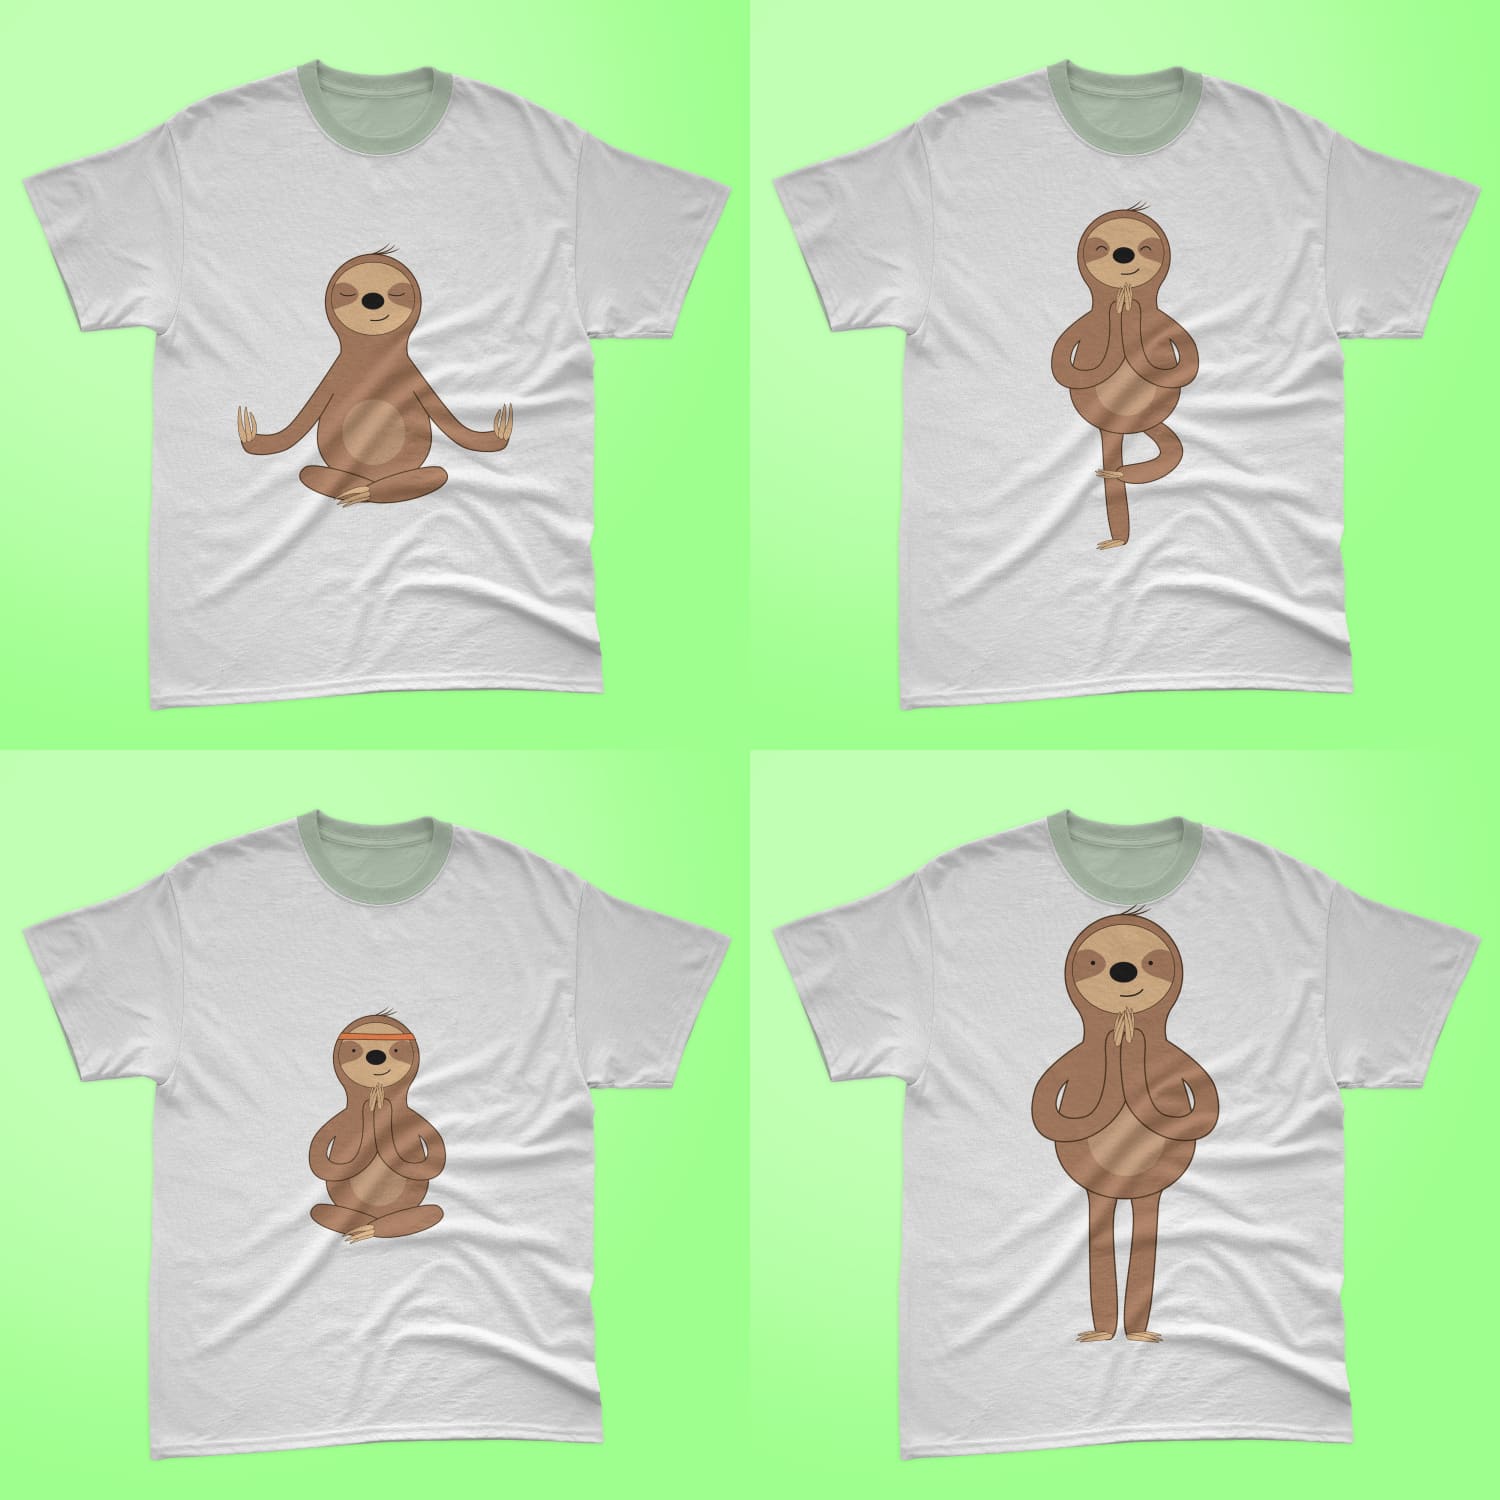 Collection of t-shirts with adorable yogi sloth prints.